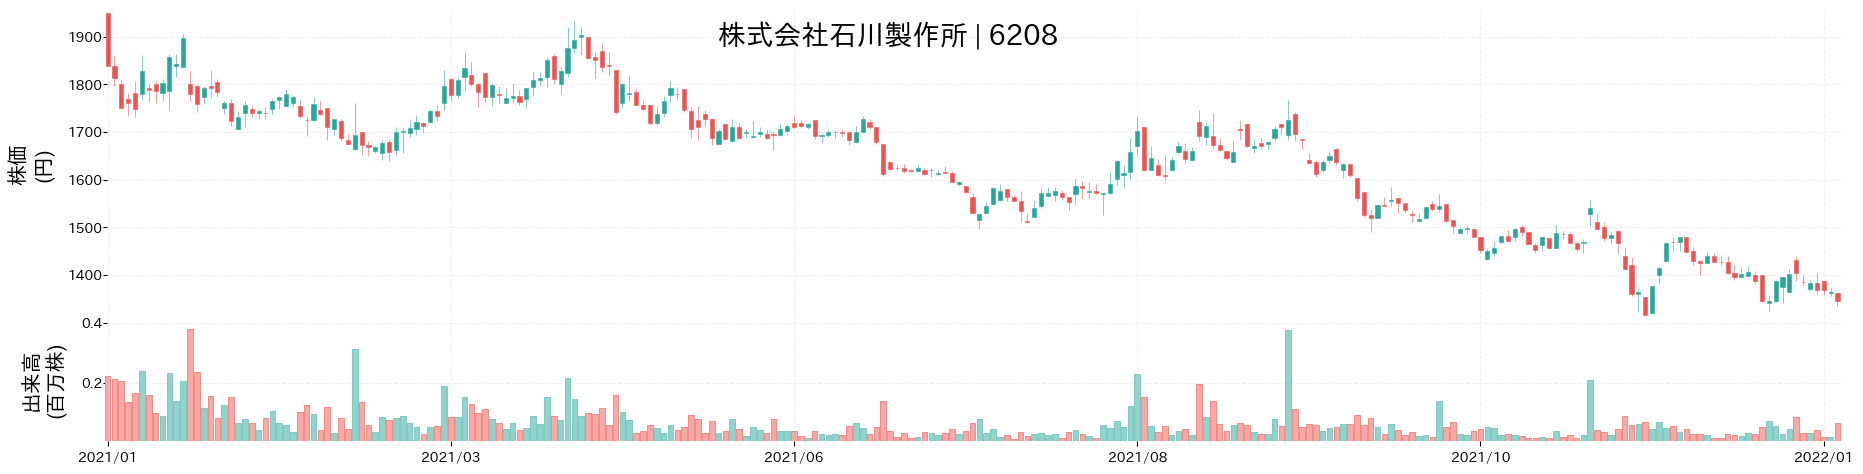 石川製作所の株価推移(2021)